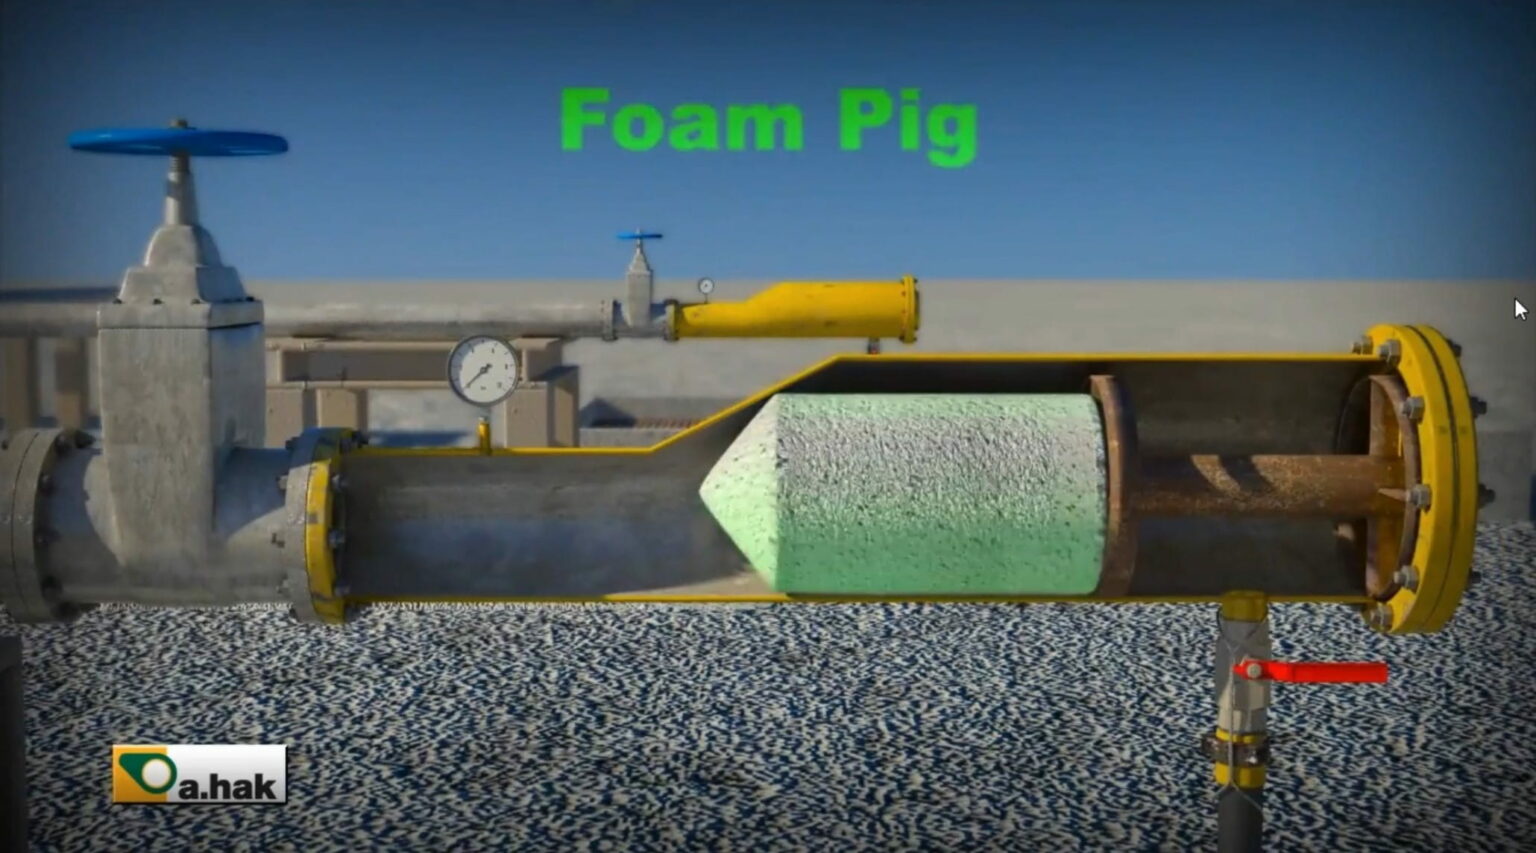 Infografía detallada del proceso de Limpieza de Tuberías con Foam Pig y su efectividad en mantenimiento